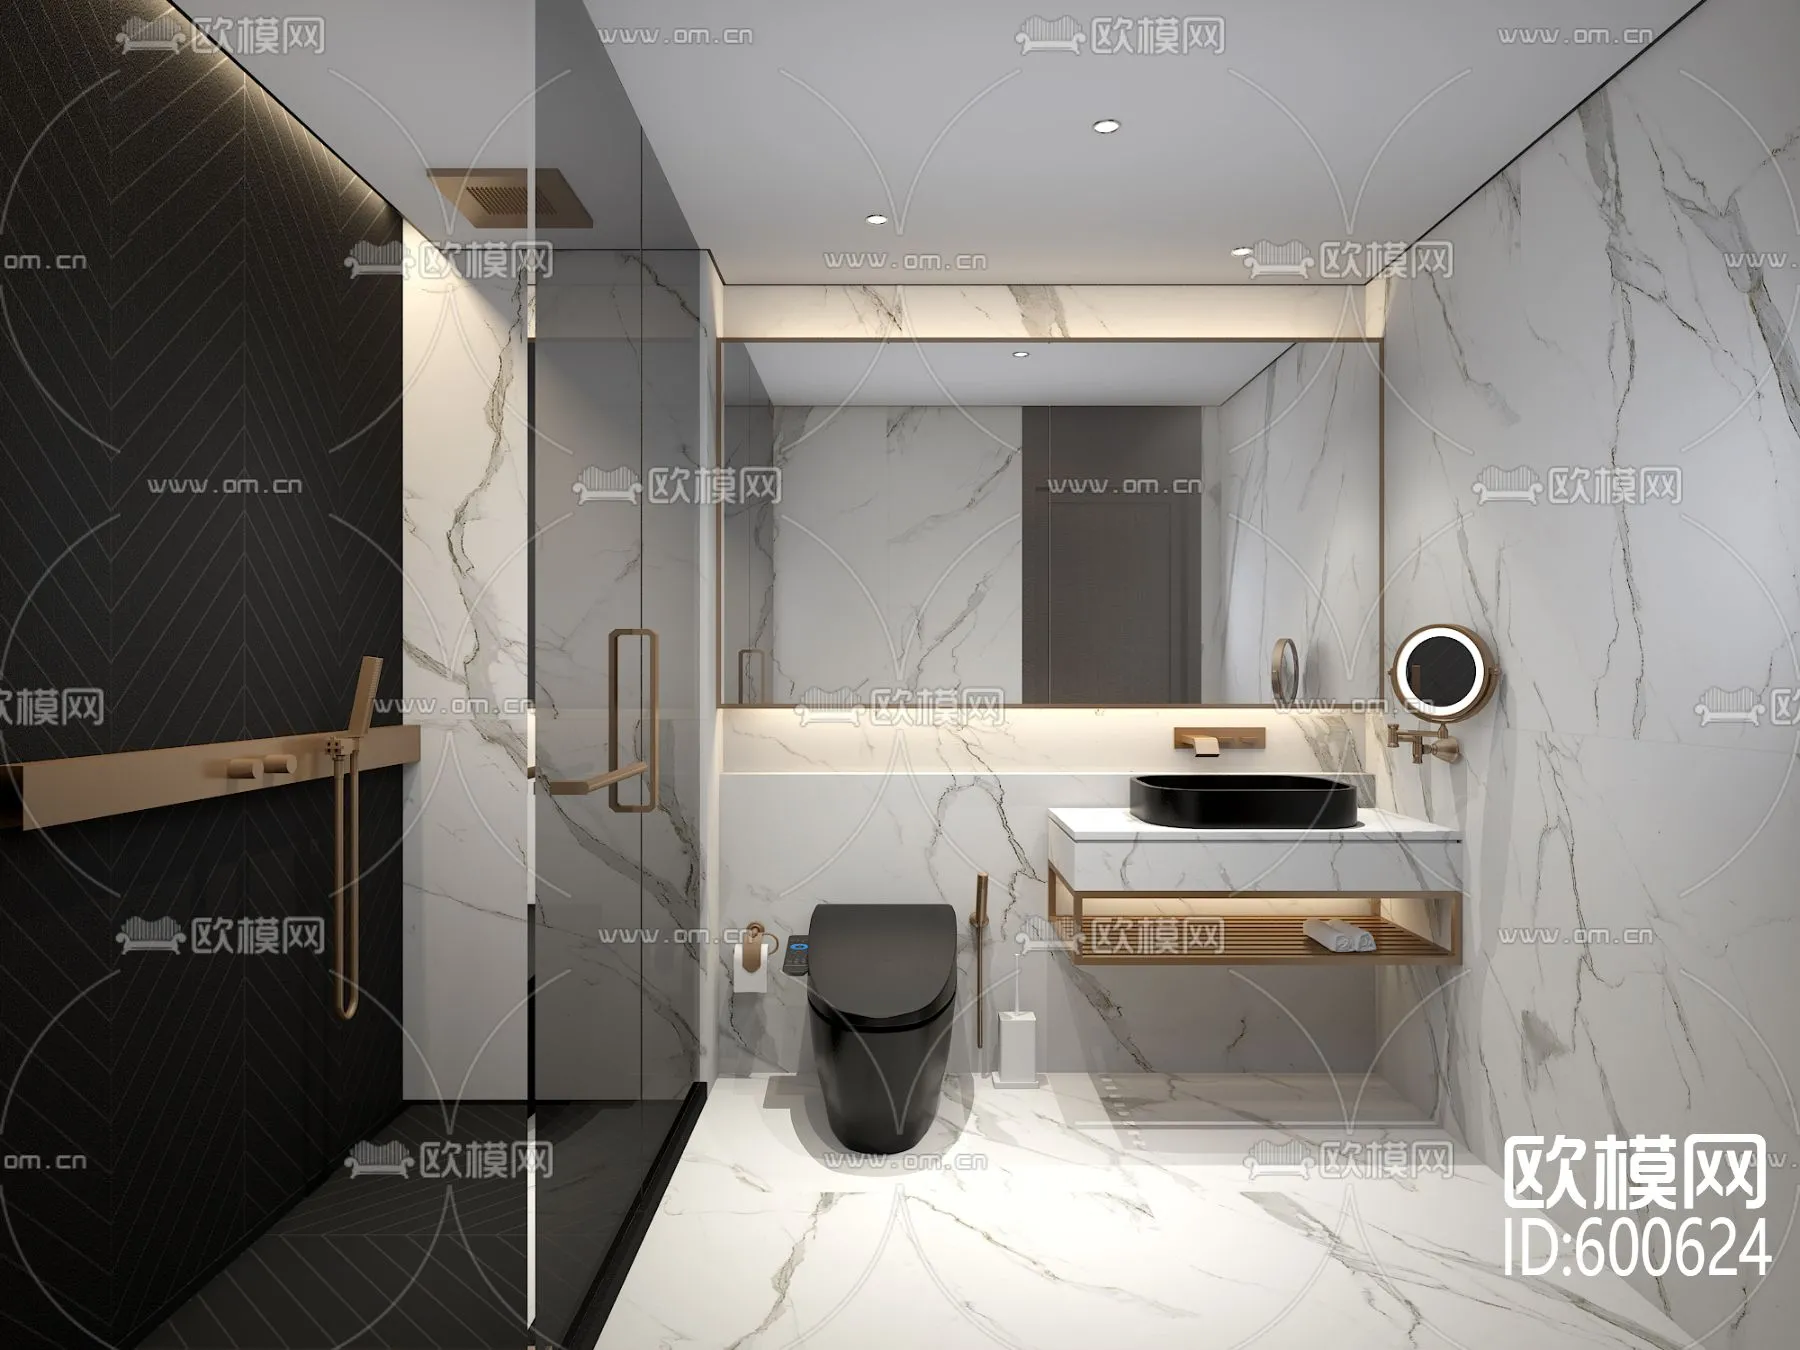 Bathroom 3D Scenes – 0110